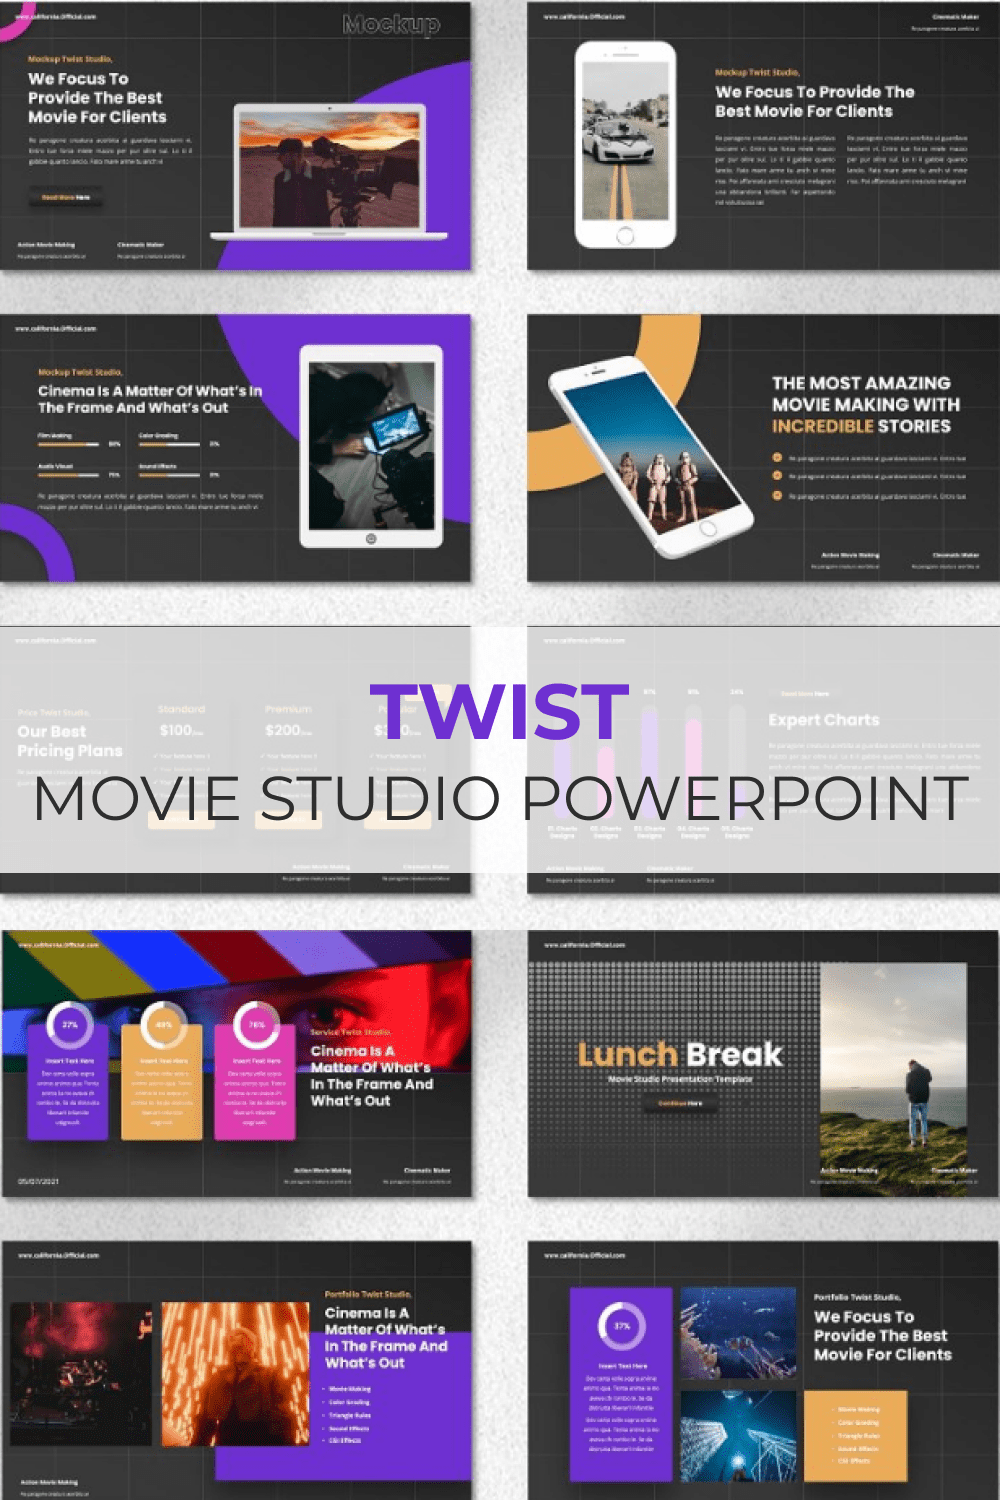 Twist - Movie Studio Powerpoint Pinterest.